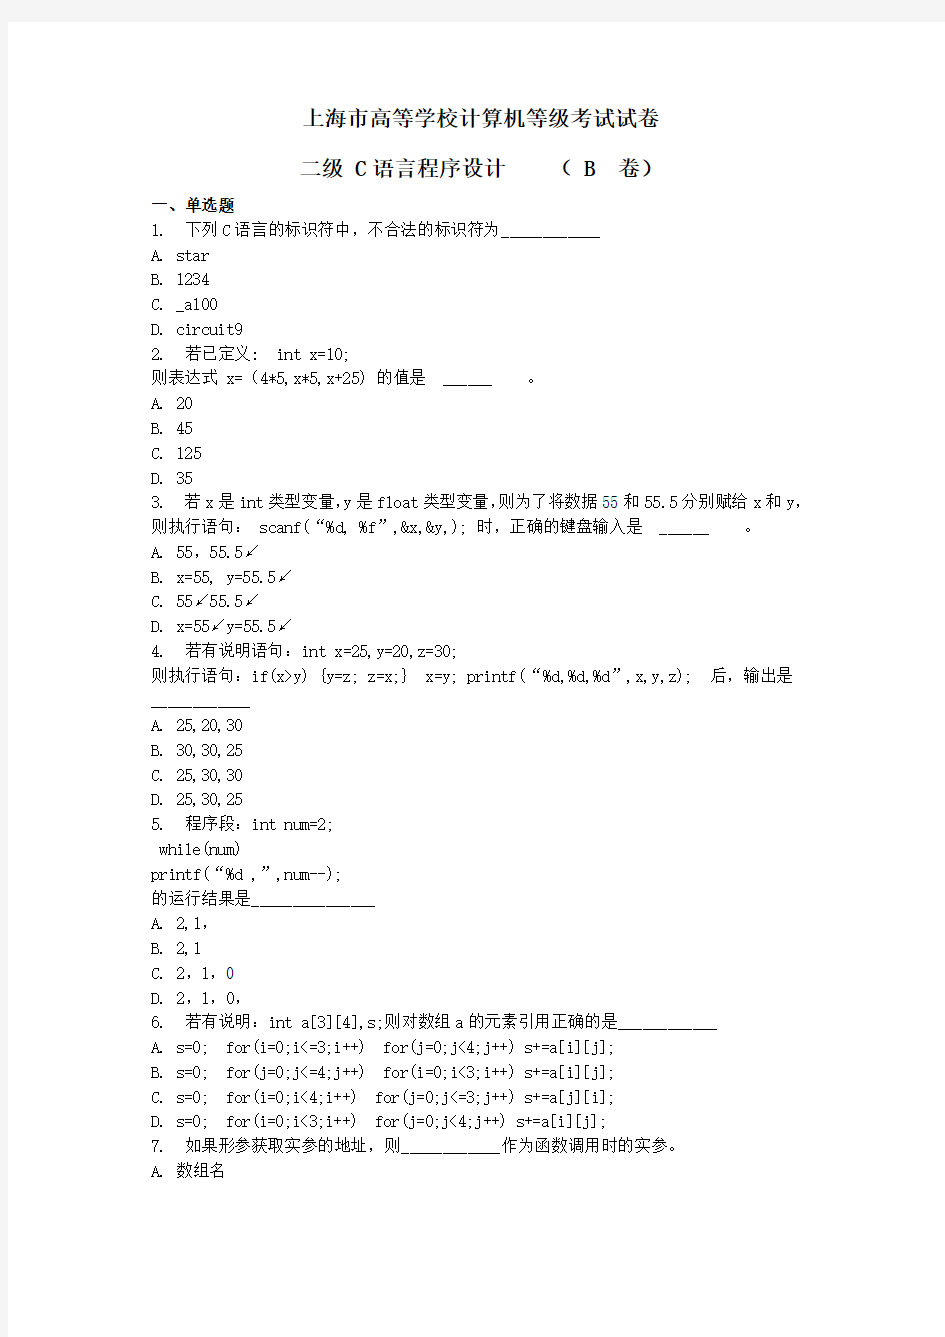 上海市高等学校计算机等级考试试卷二级C语言程序设计( B 卷)